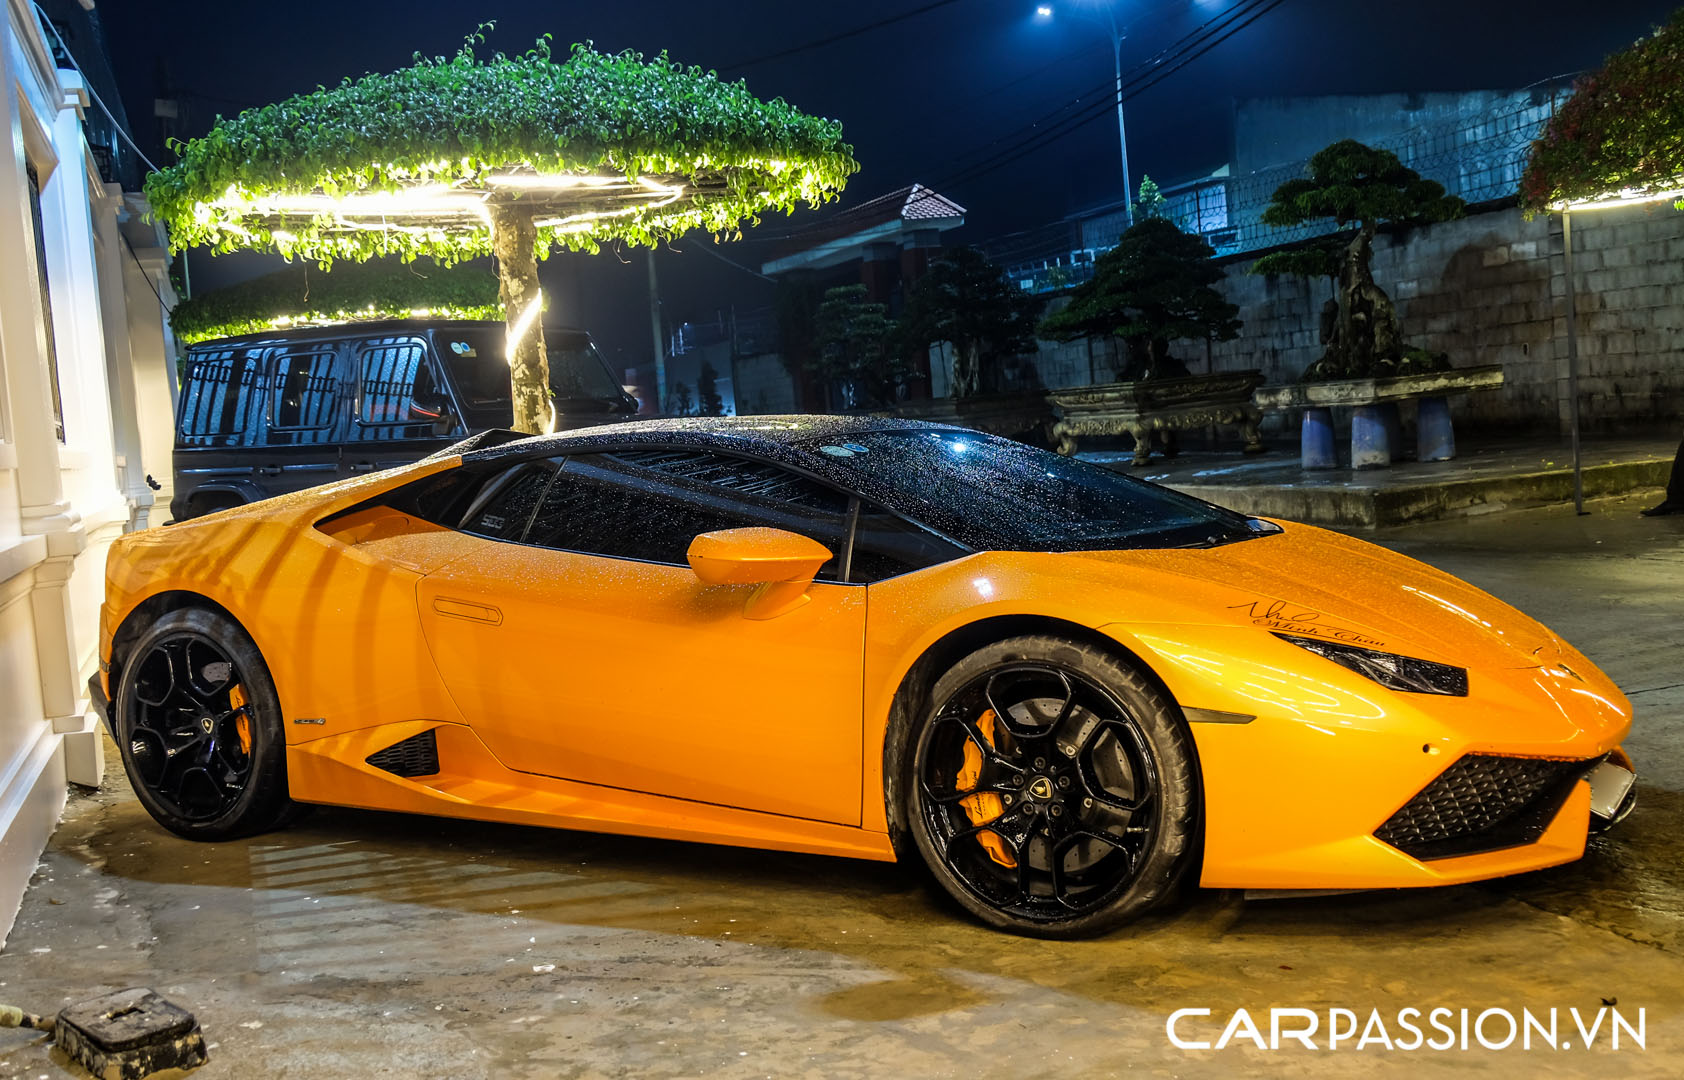 CP-Bộ đôi Lamborghini Huracan độ độc đáo27.jpg